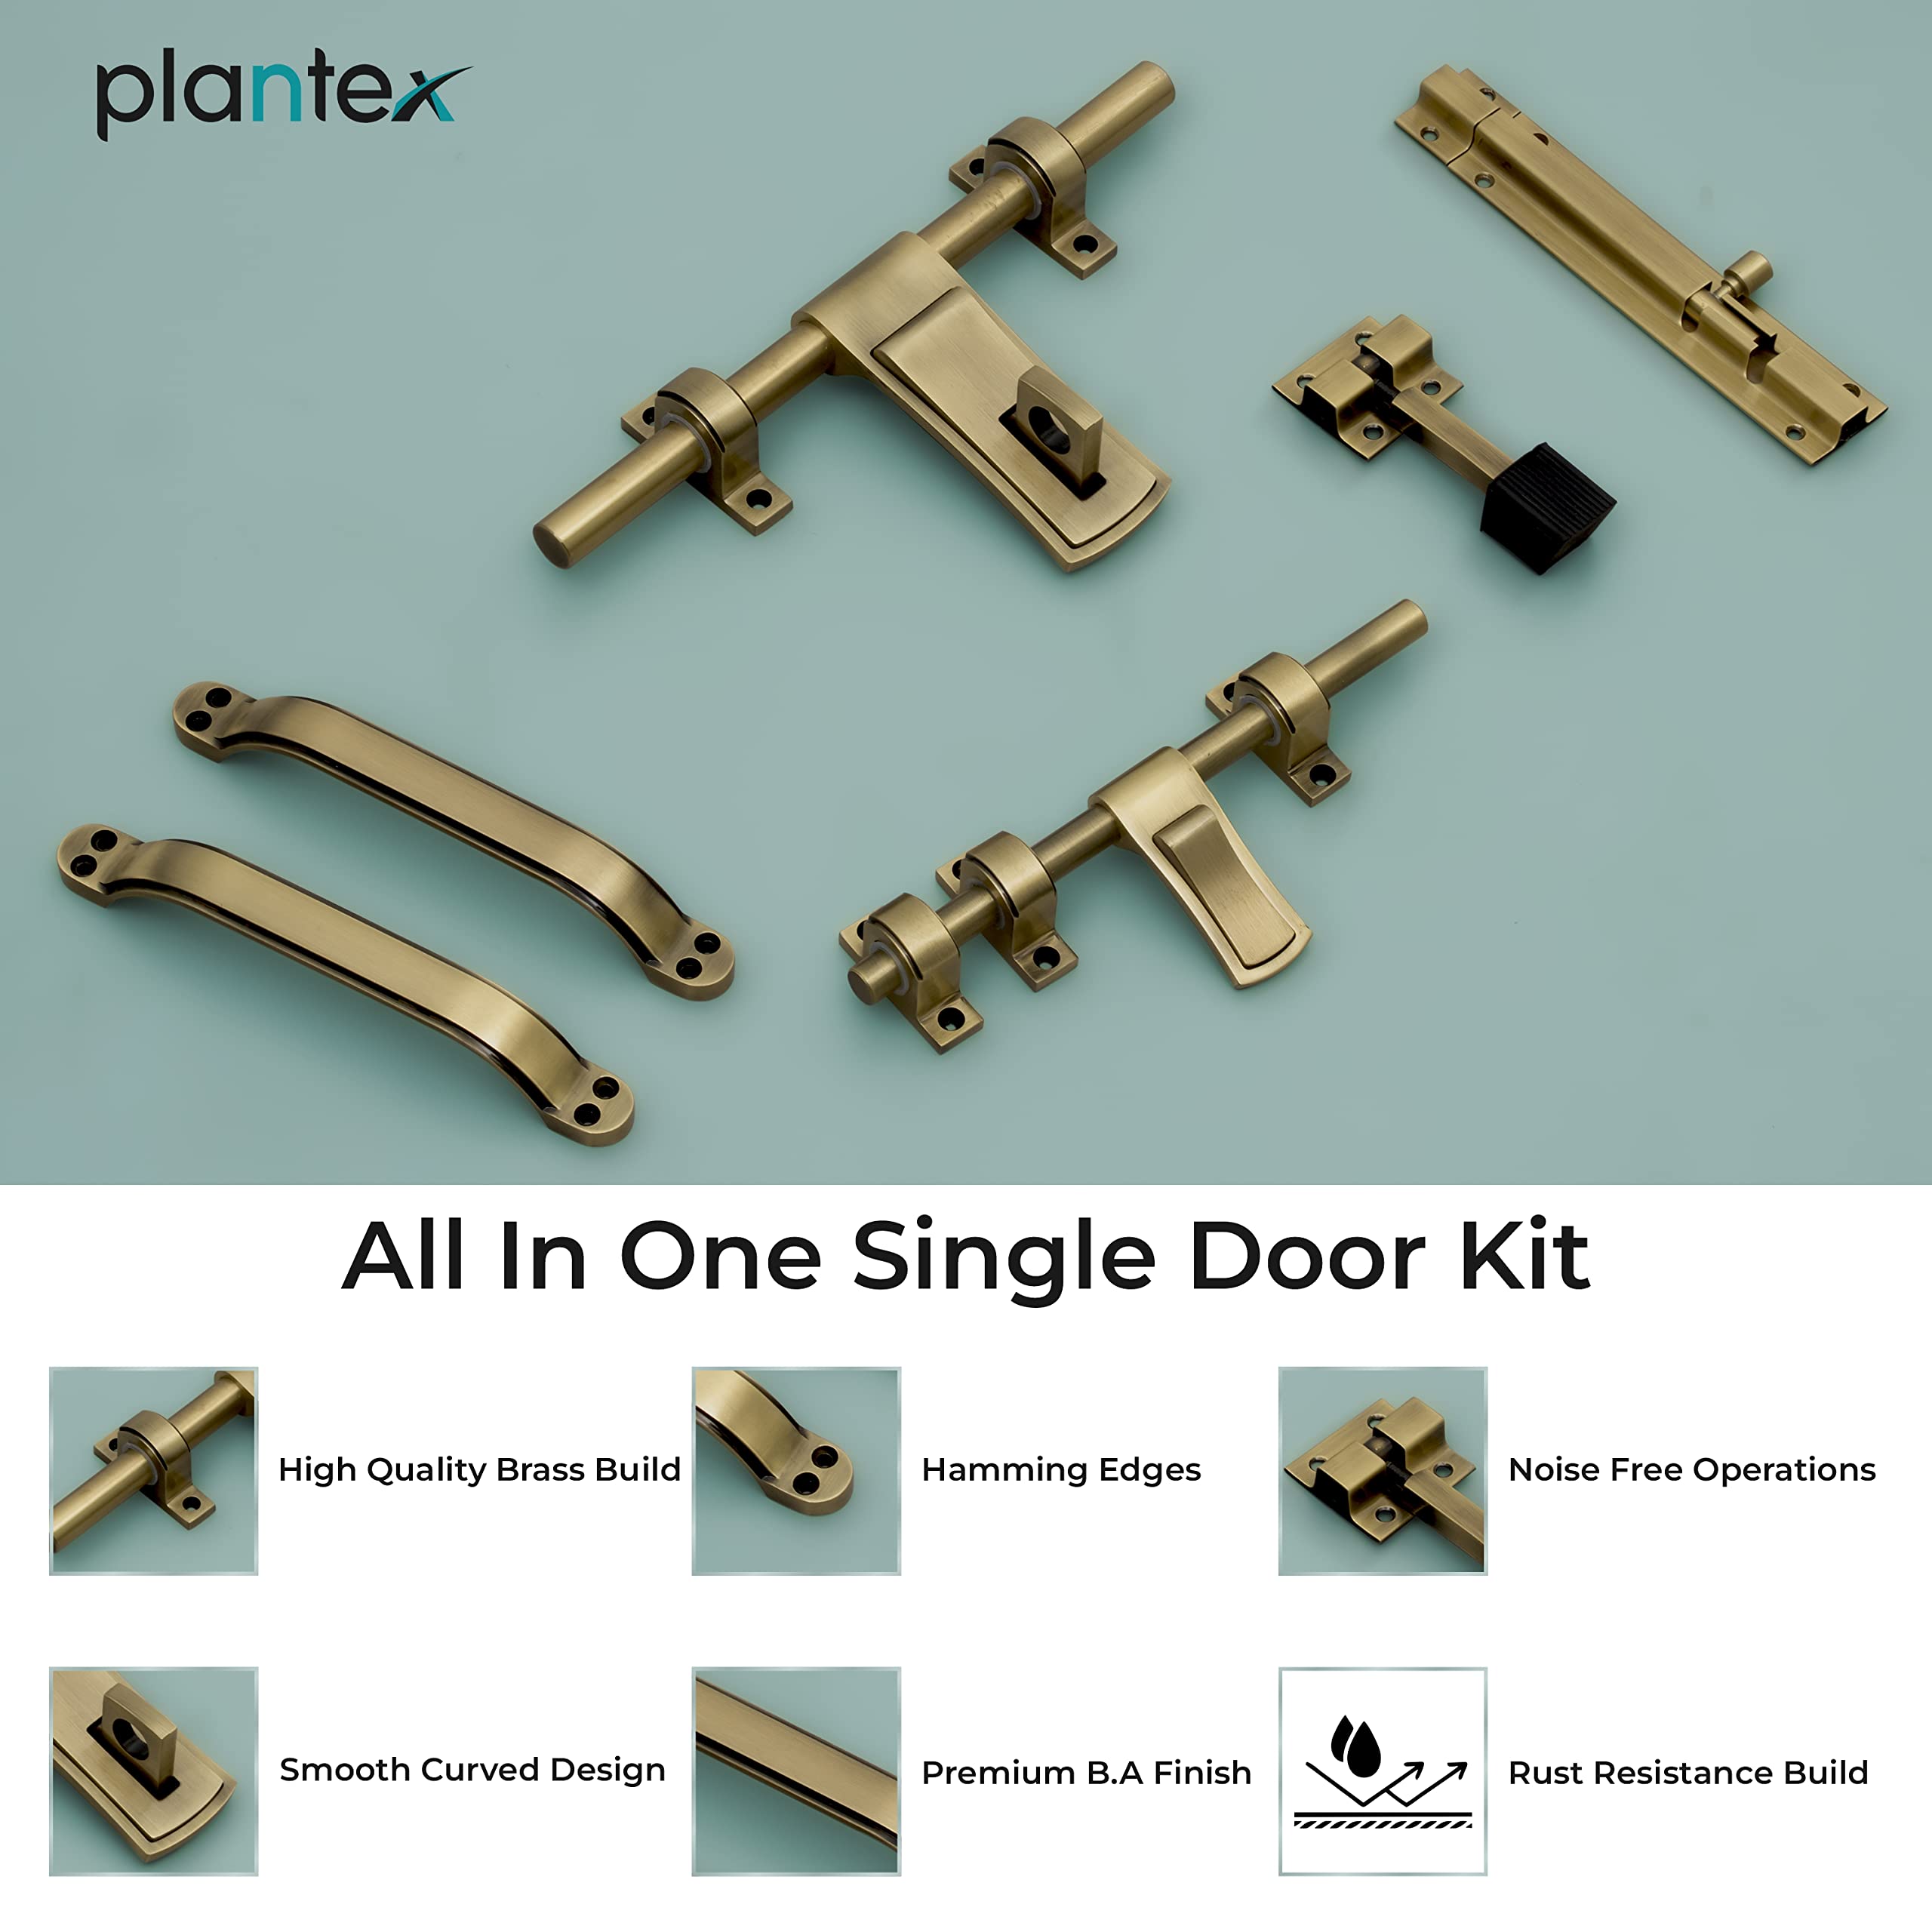 Plantex Stainless Steel Door Kit for Single Door/Door Hardware/Door Accessories (10 inch Al-Drop,8 inch Latch, 7 inch 2 Handles,7 inch Tower Bolt and 4 inch Door Stopper) - (DMAL-02-Brass Antique)